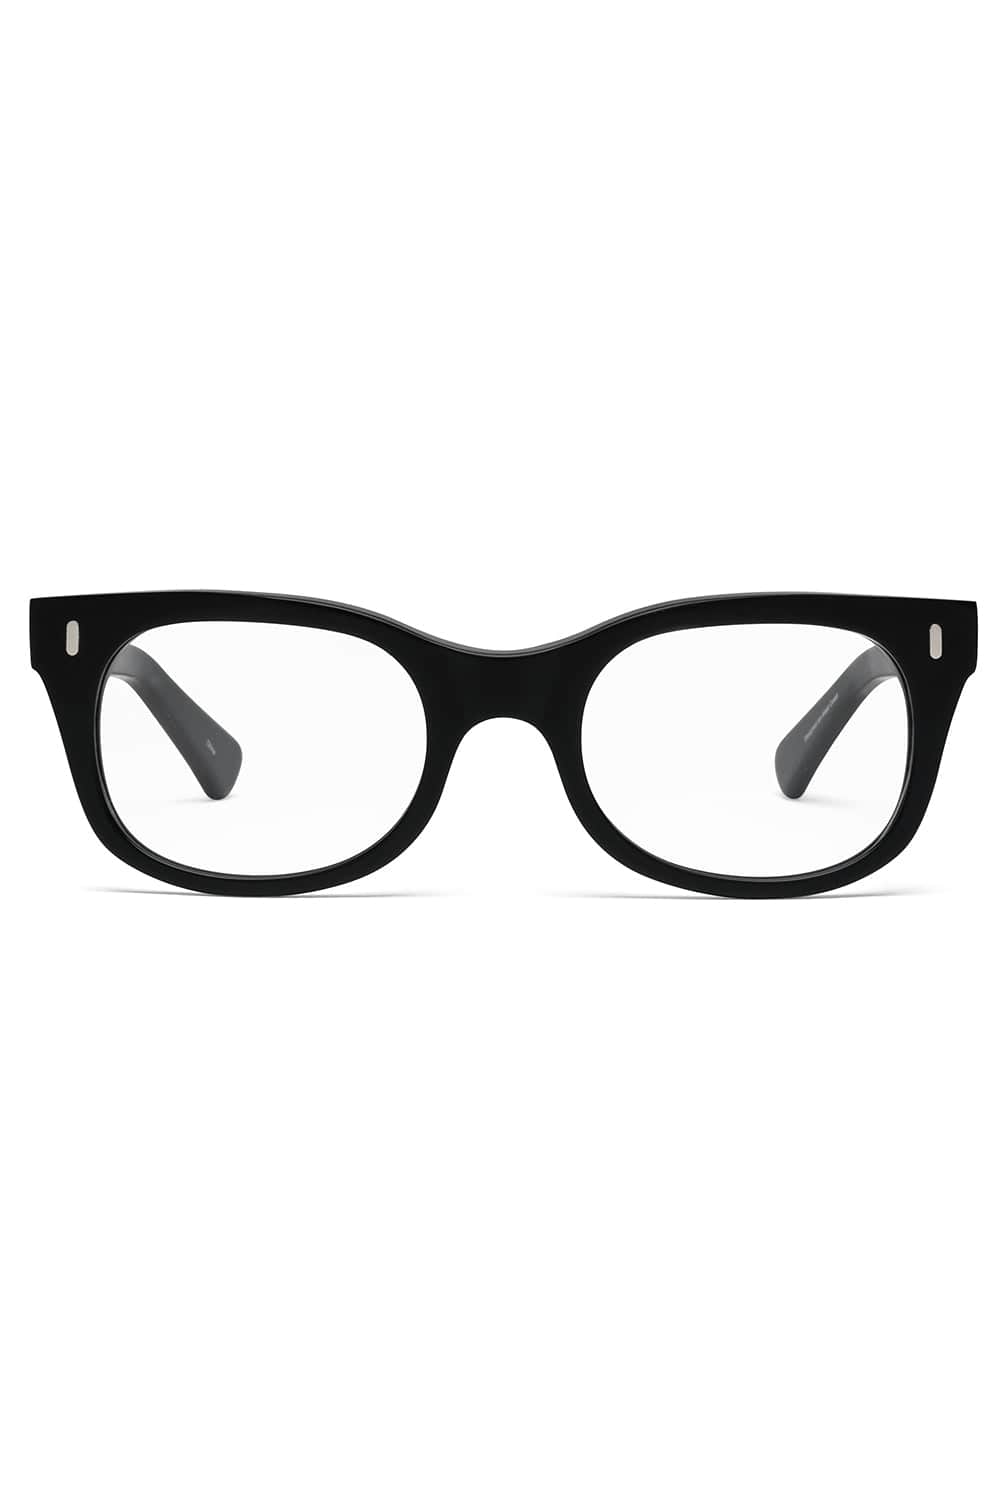 CADDIS-Bixby Progressive Glasses - Matte Black-